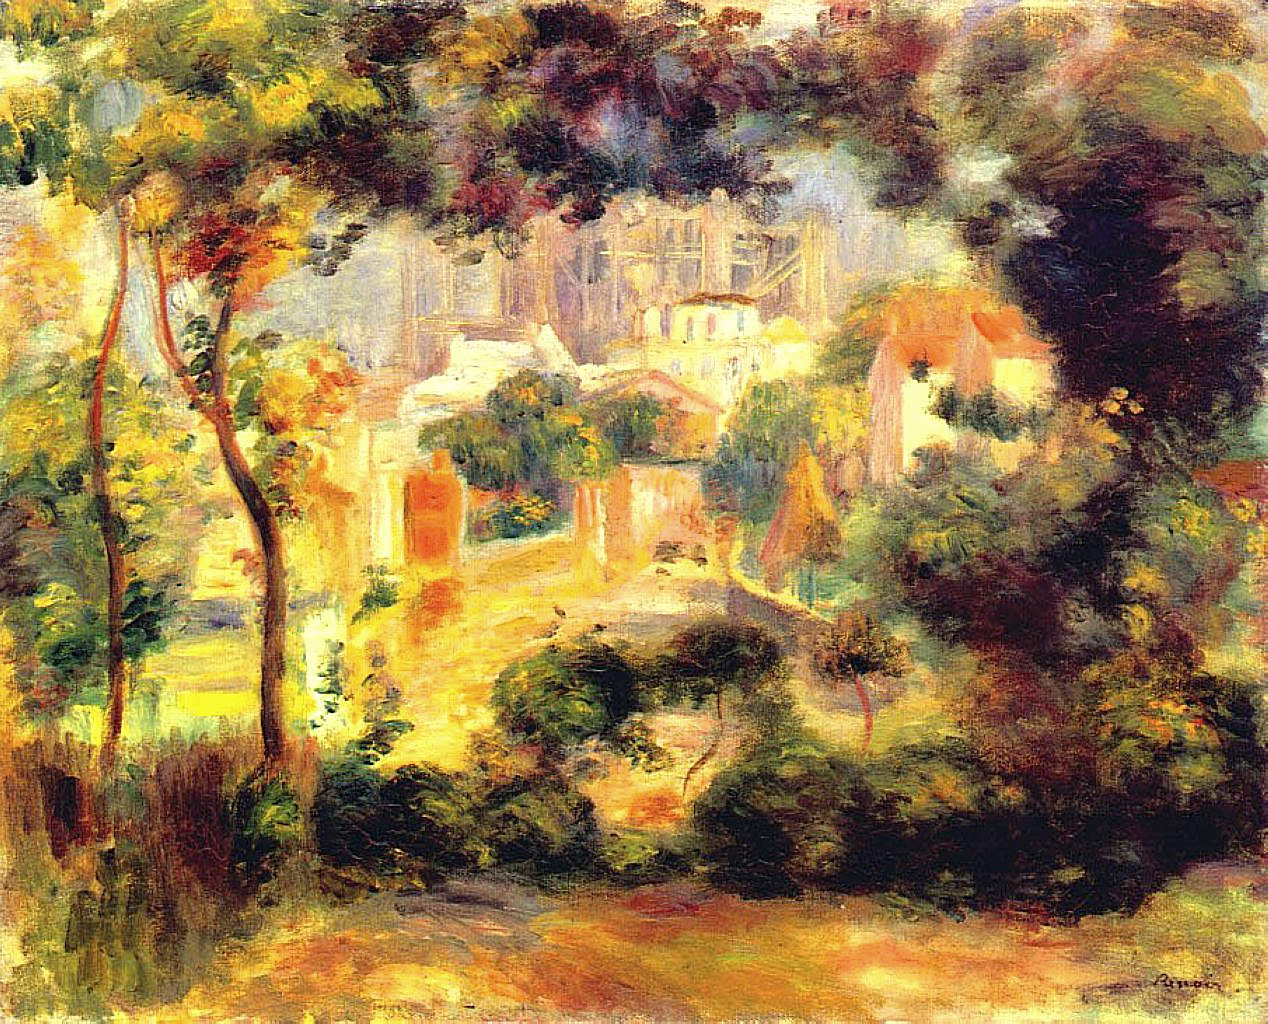 Pierre+Auguste+Renoir-1841-1-19 (553).jpg